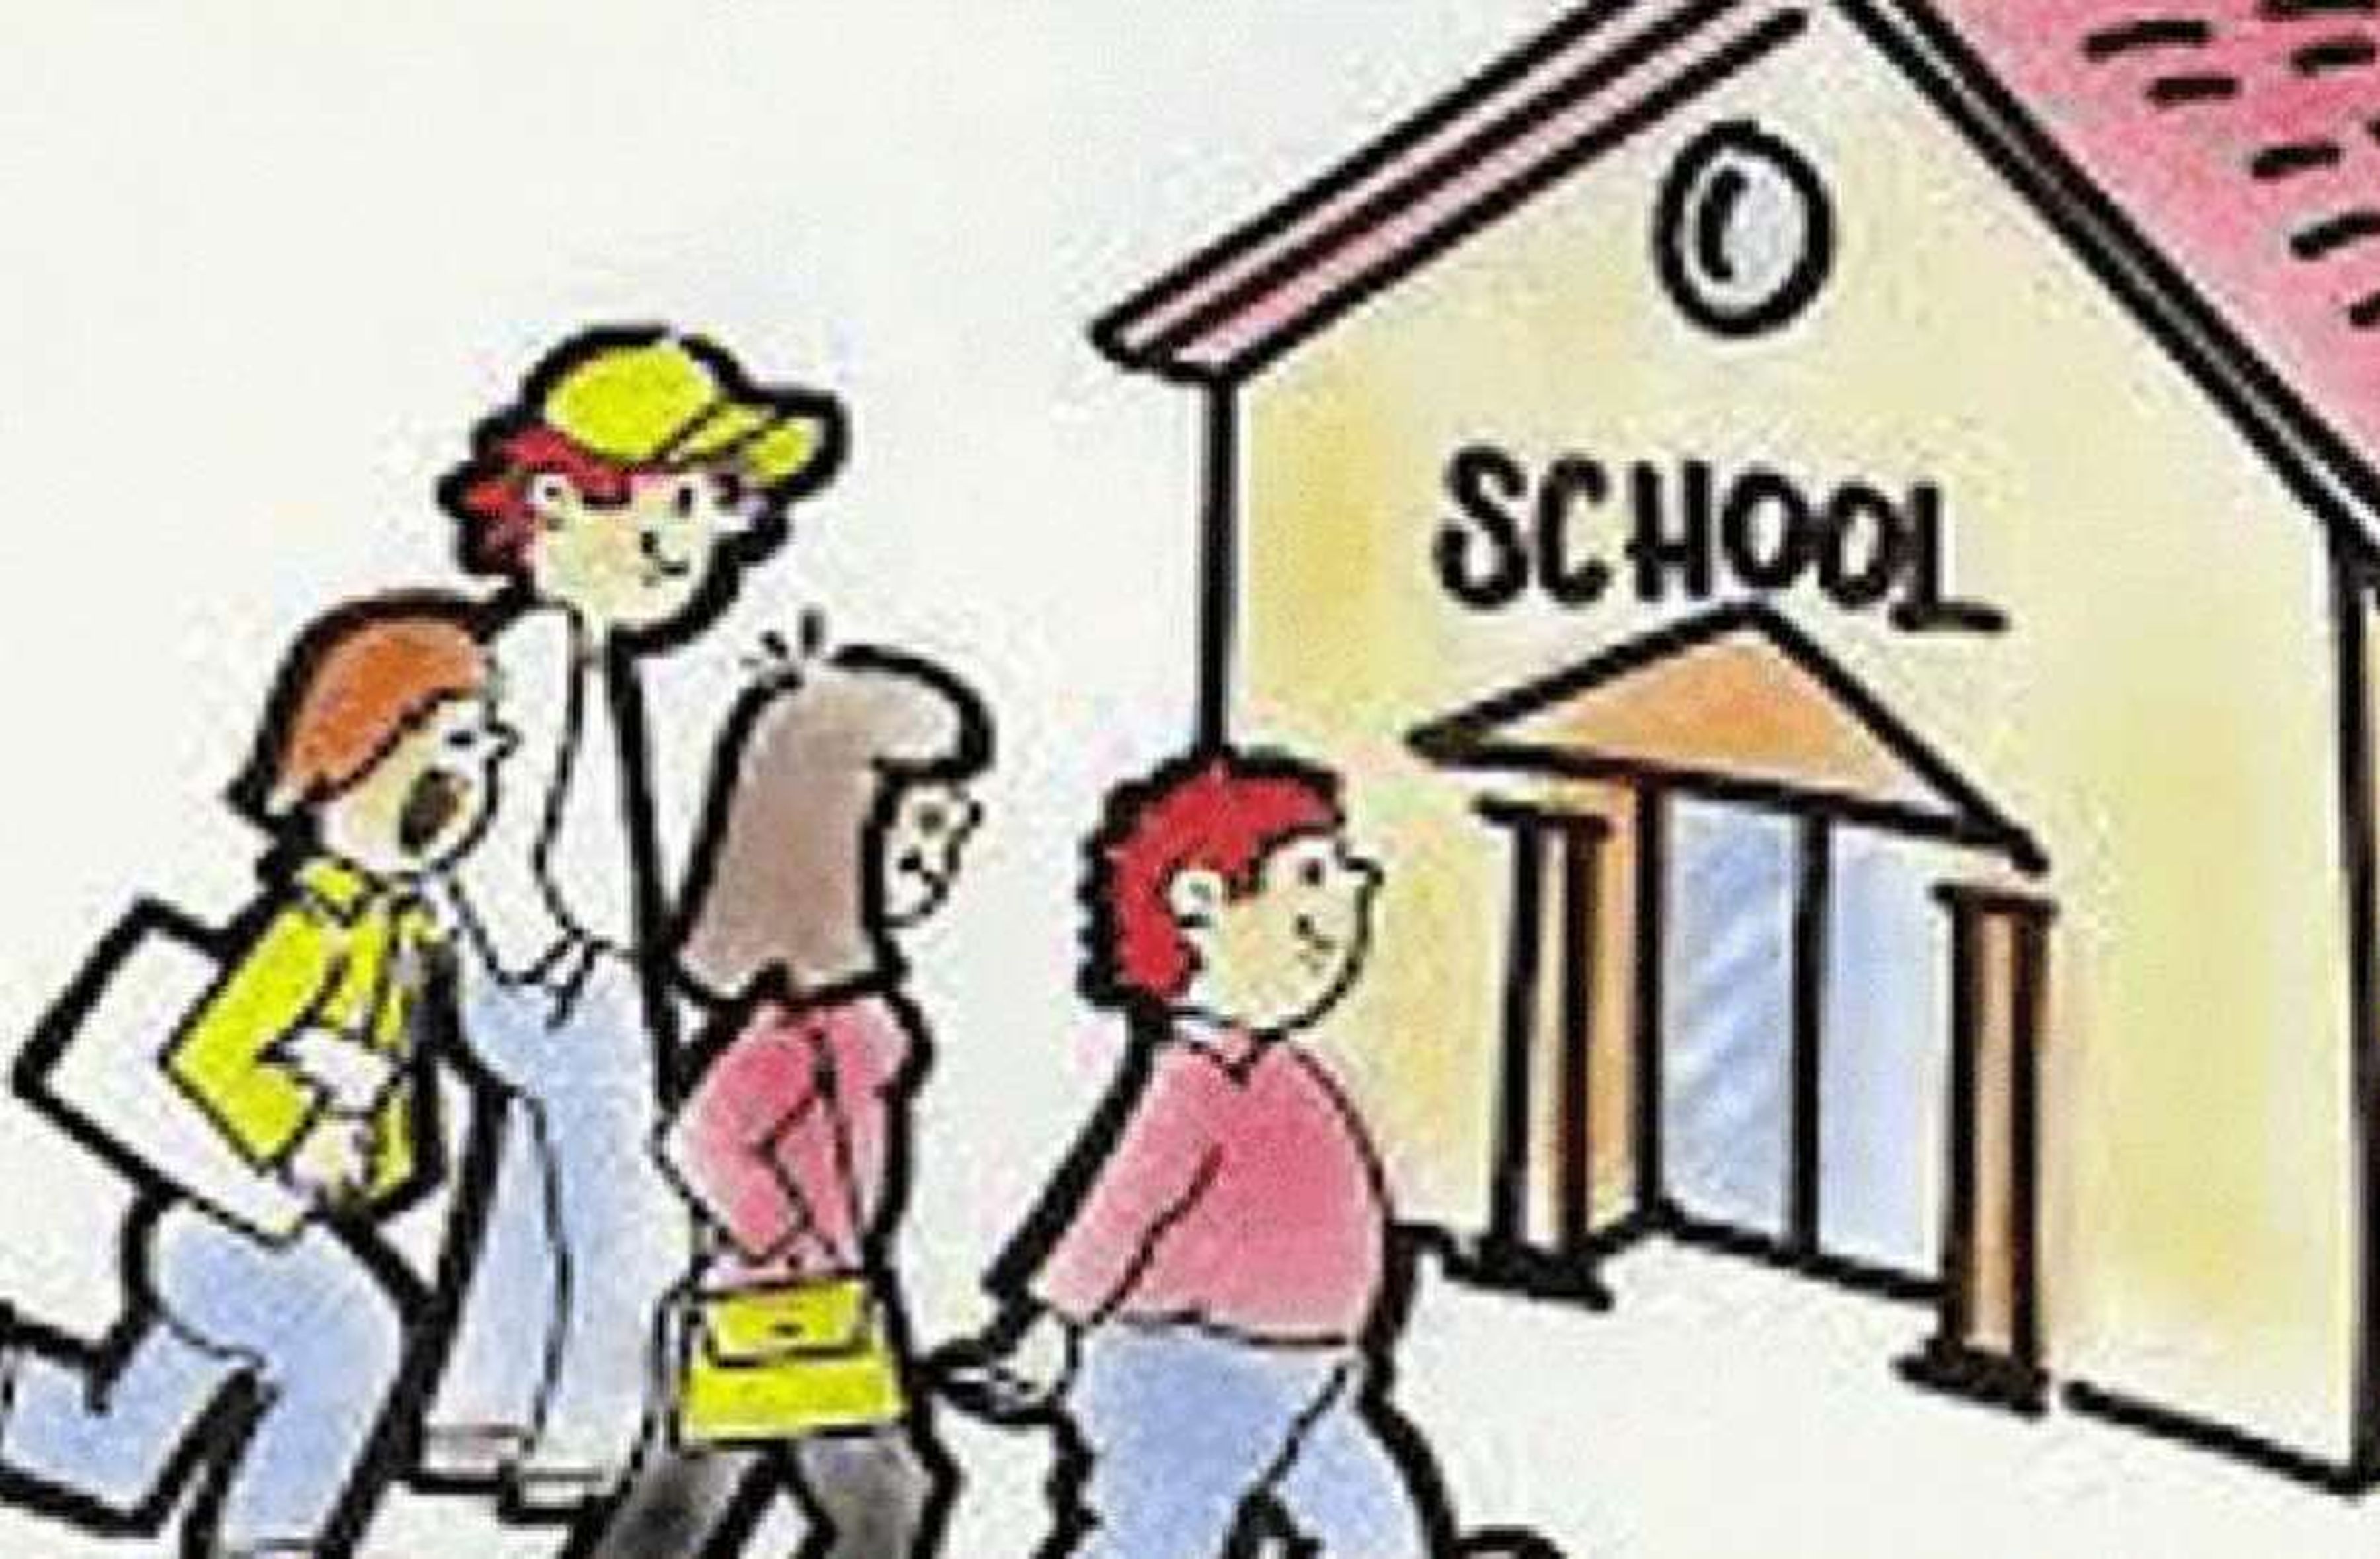 school- हर ग्राम पंचायत पर होगी सरकारी स्कूल, क्रमोन्नति की भी कवायद